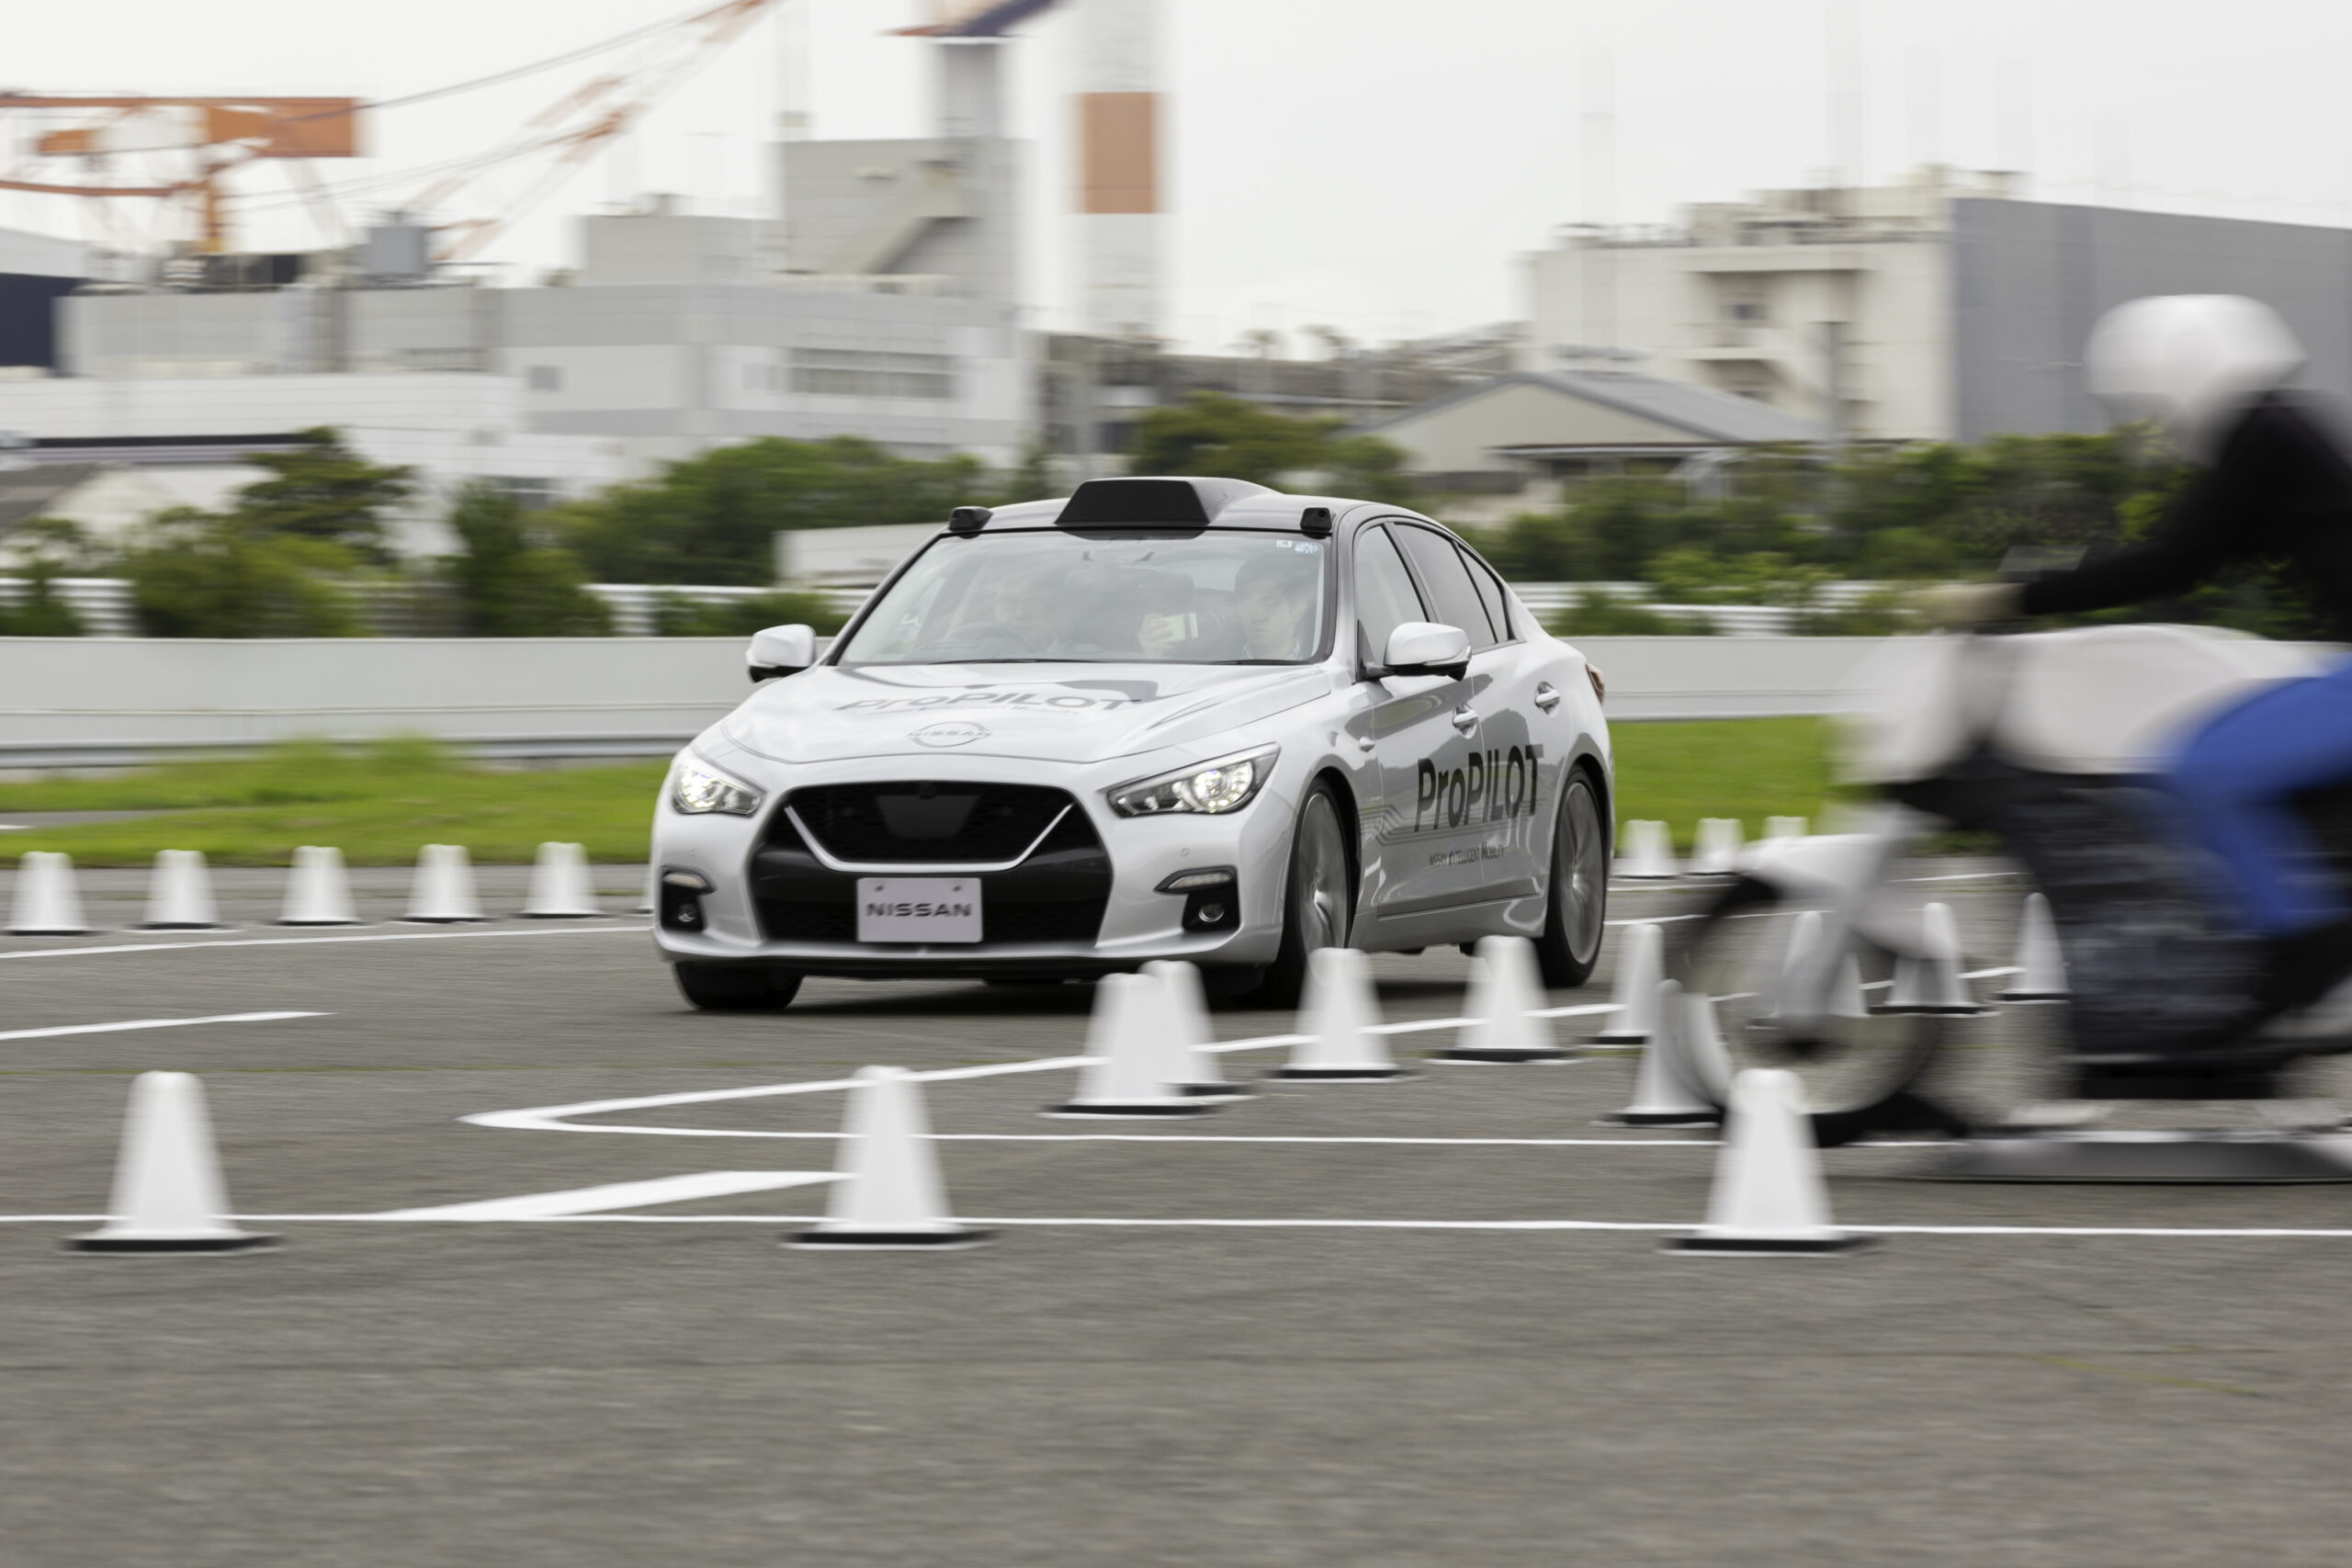 Nissan agrega la prevención de colisiones en intersecciones a su tecnología de asistencia al conductor basada en LIDAR en desarrollo